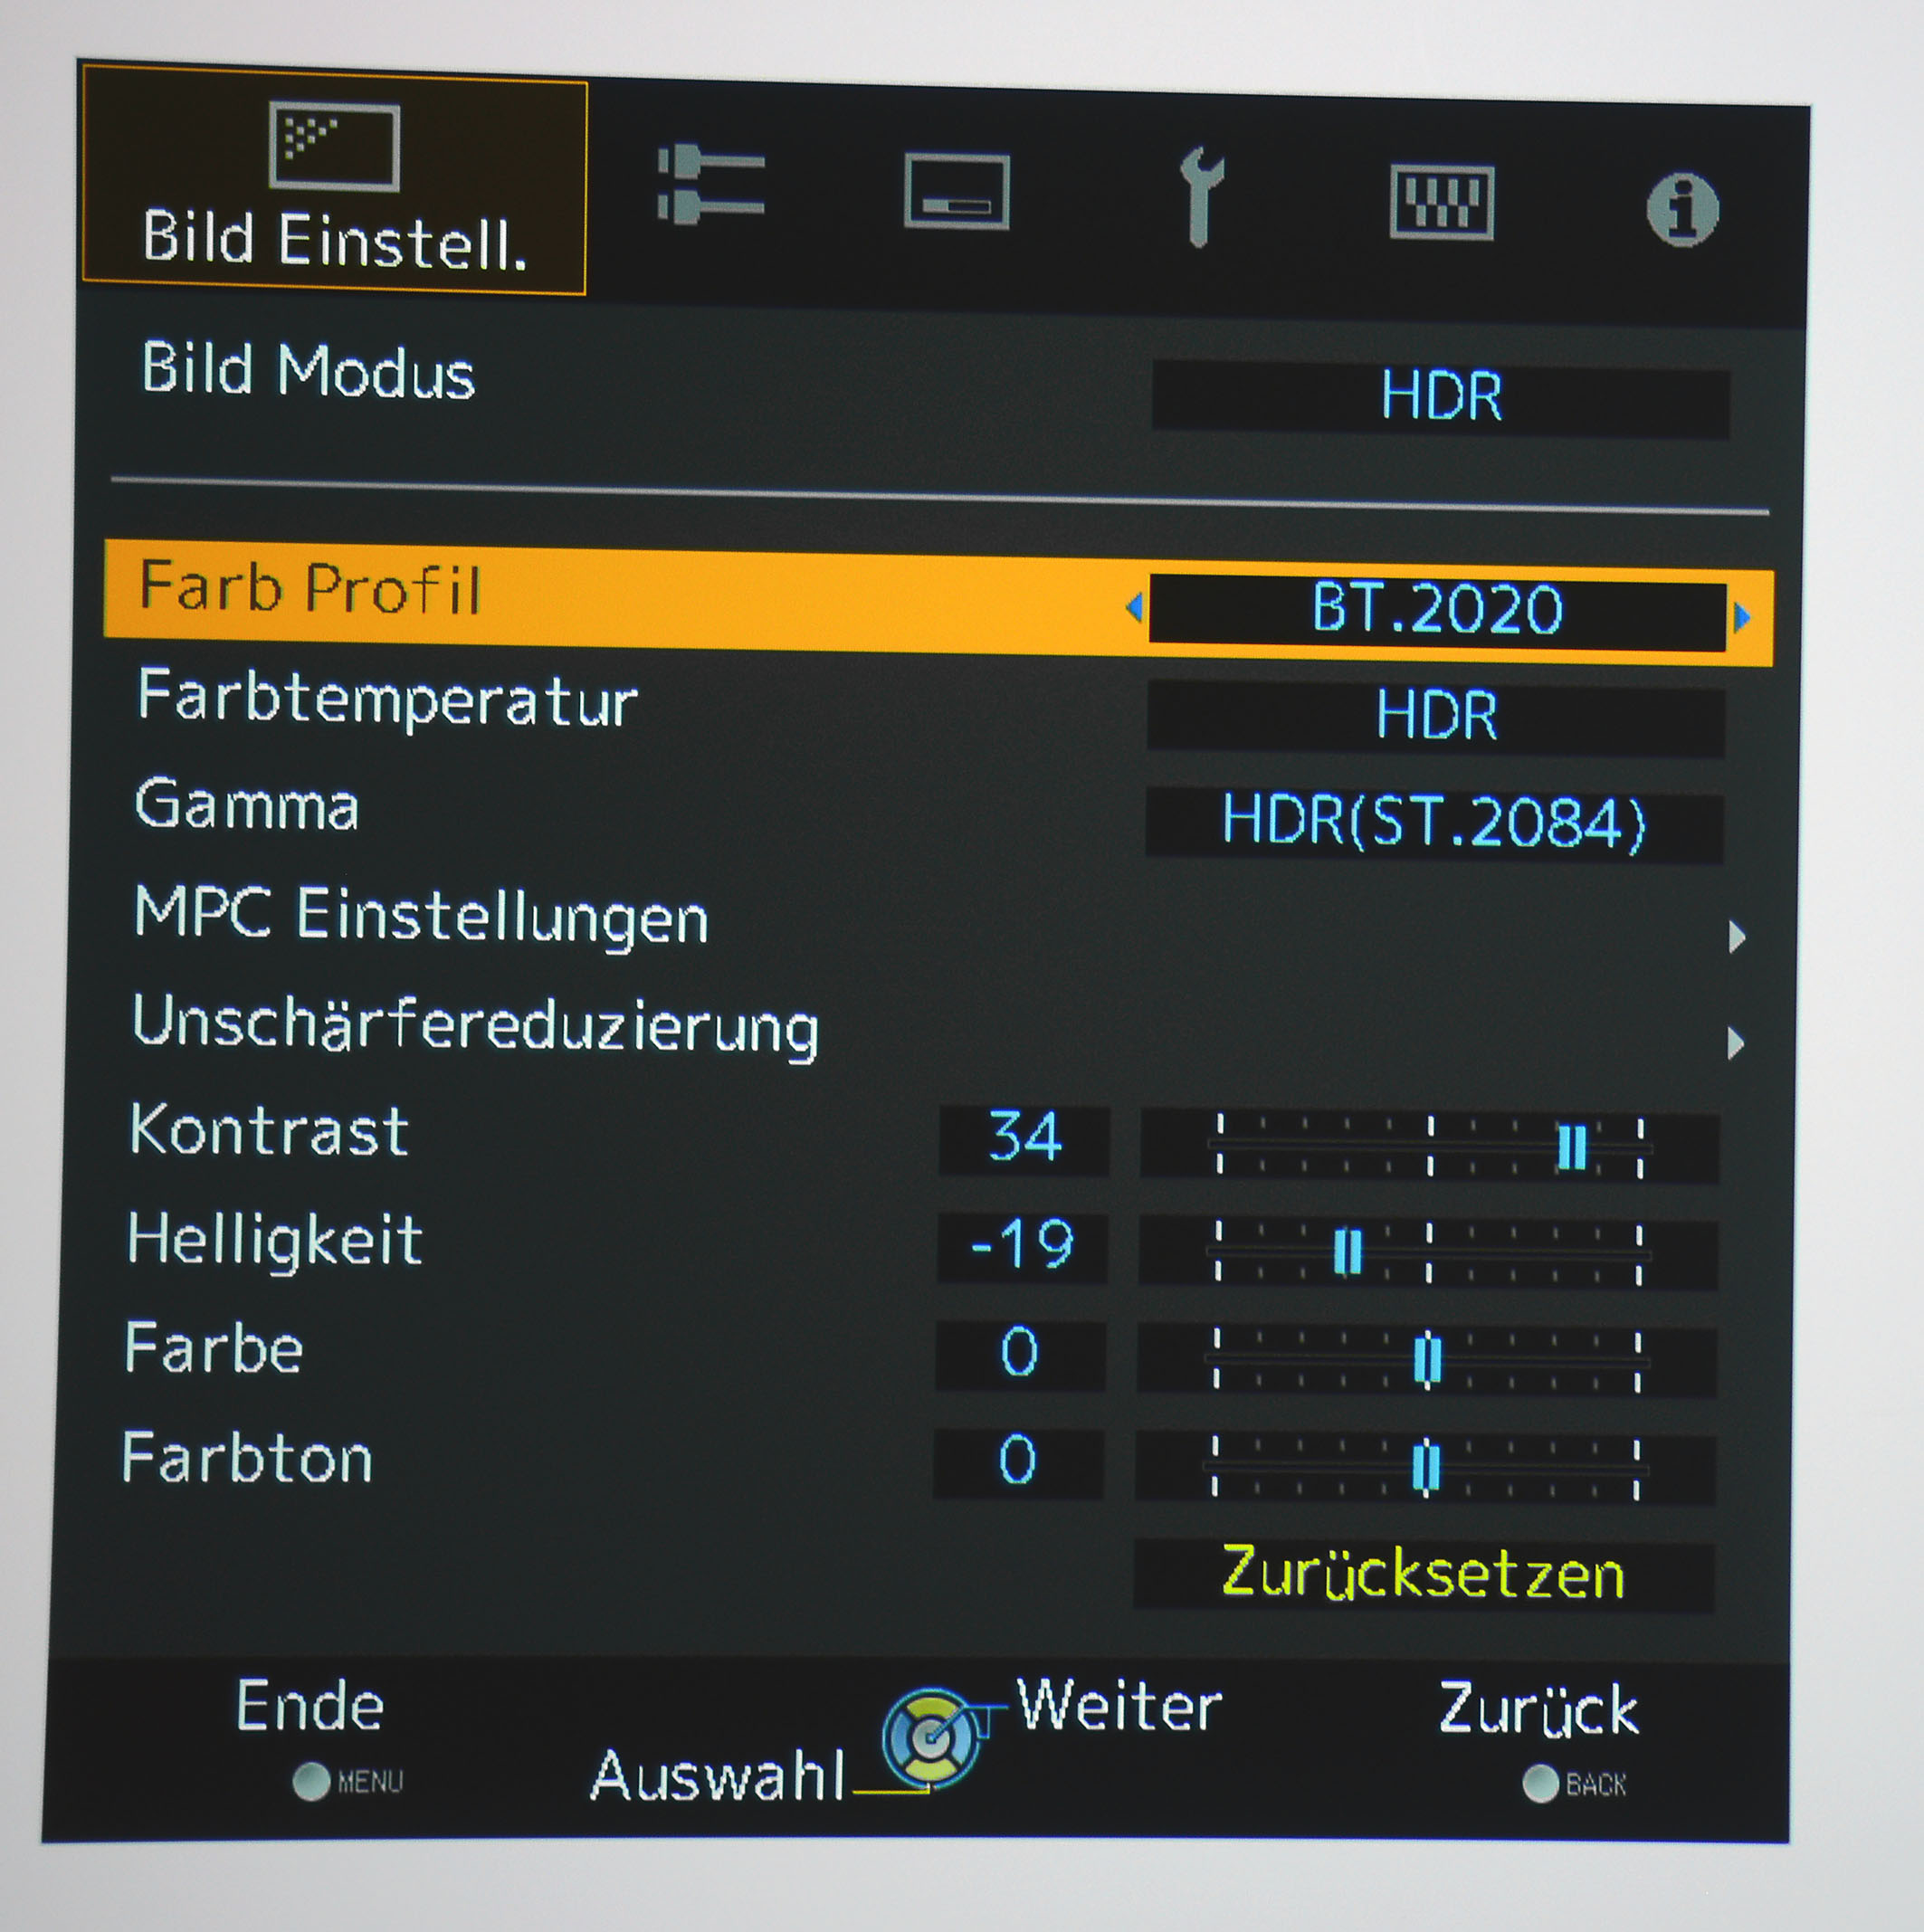 HDR: Das Farbprofil „BT.2020“ muss händisch eingeschaltet werden, verbessert aber sichtbar die Farben von UHD/HDR-Content.